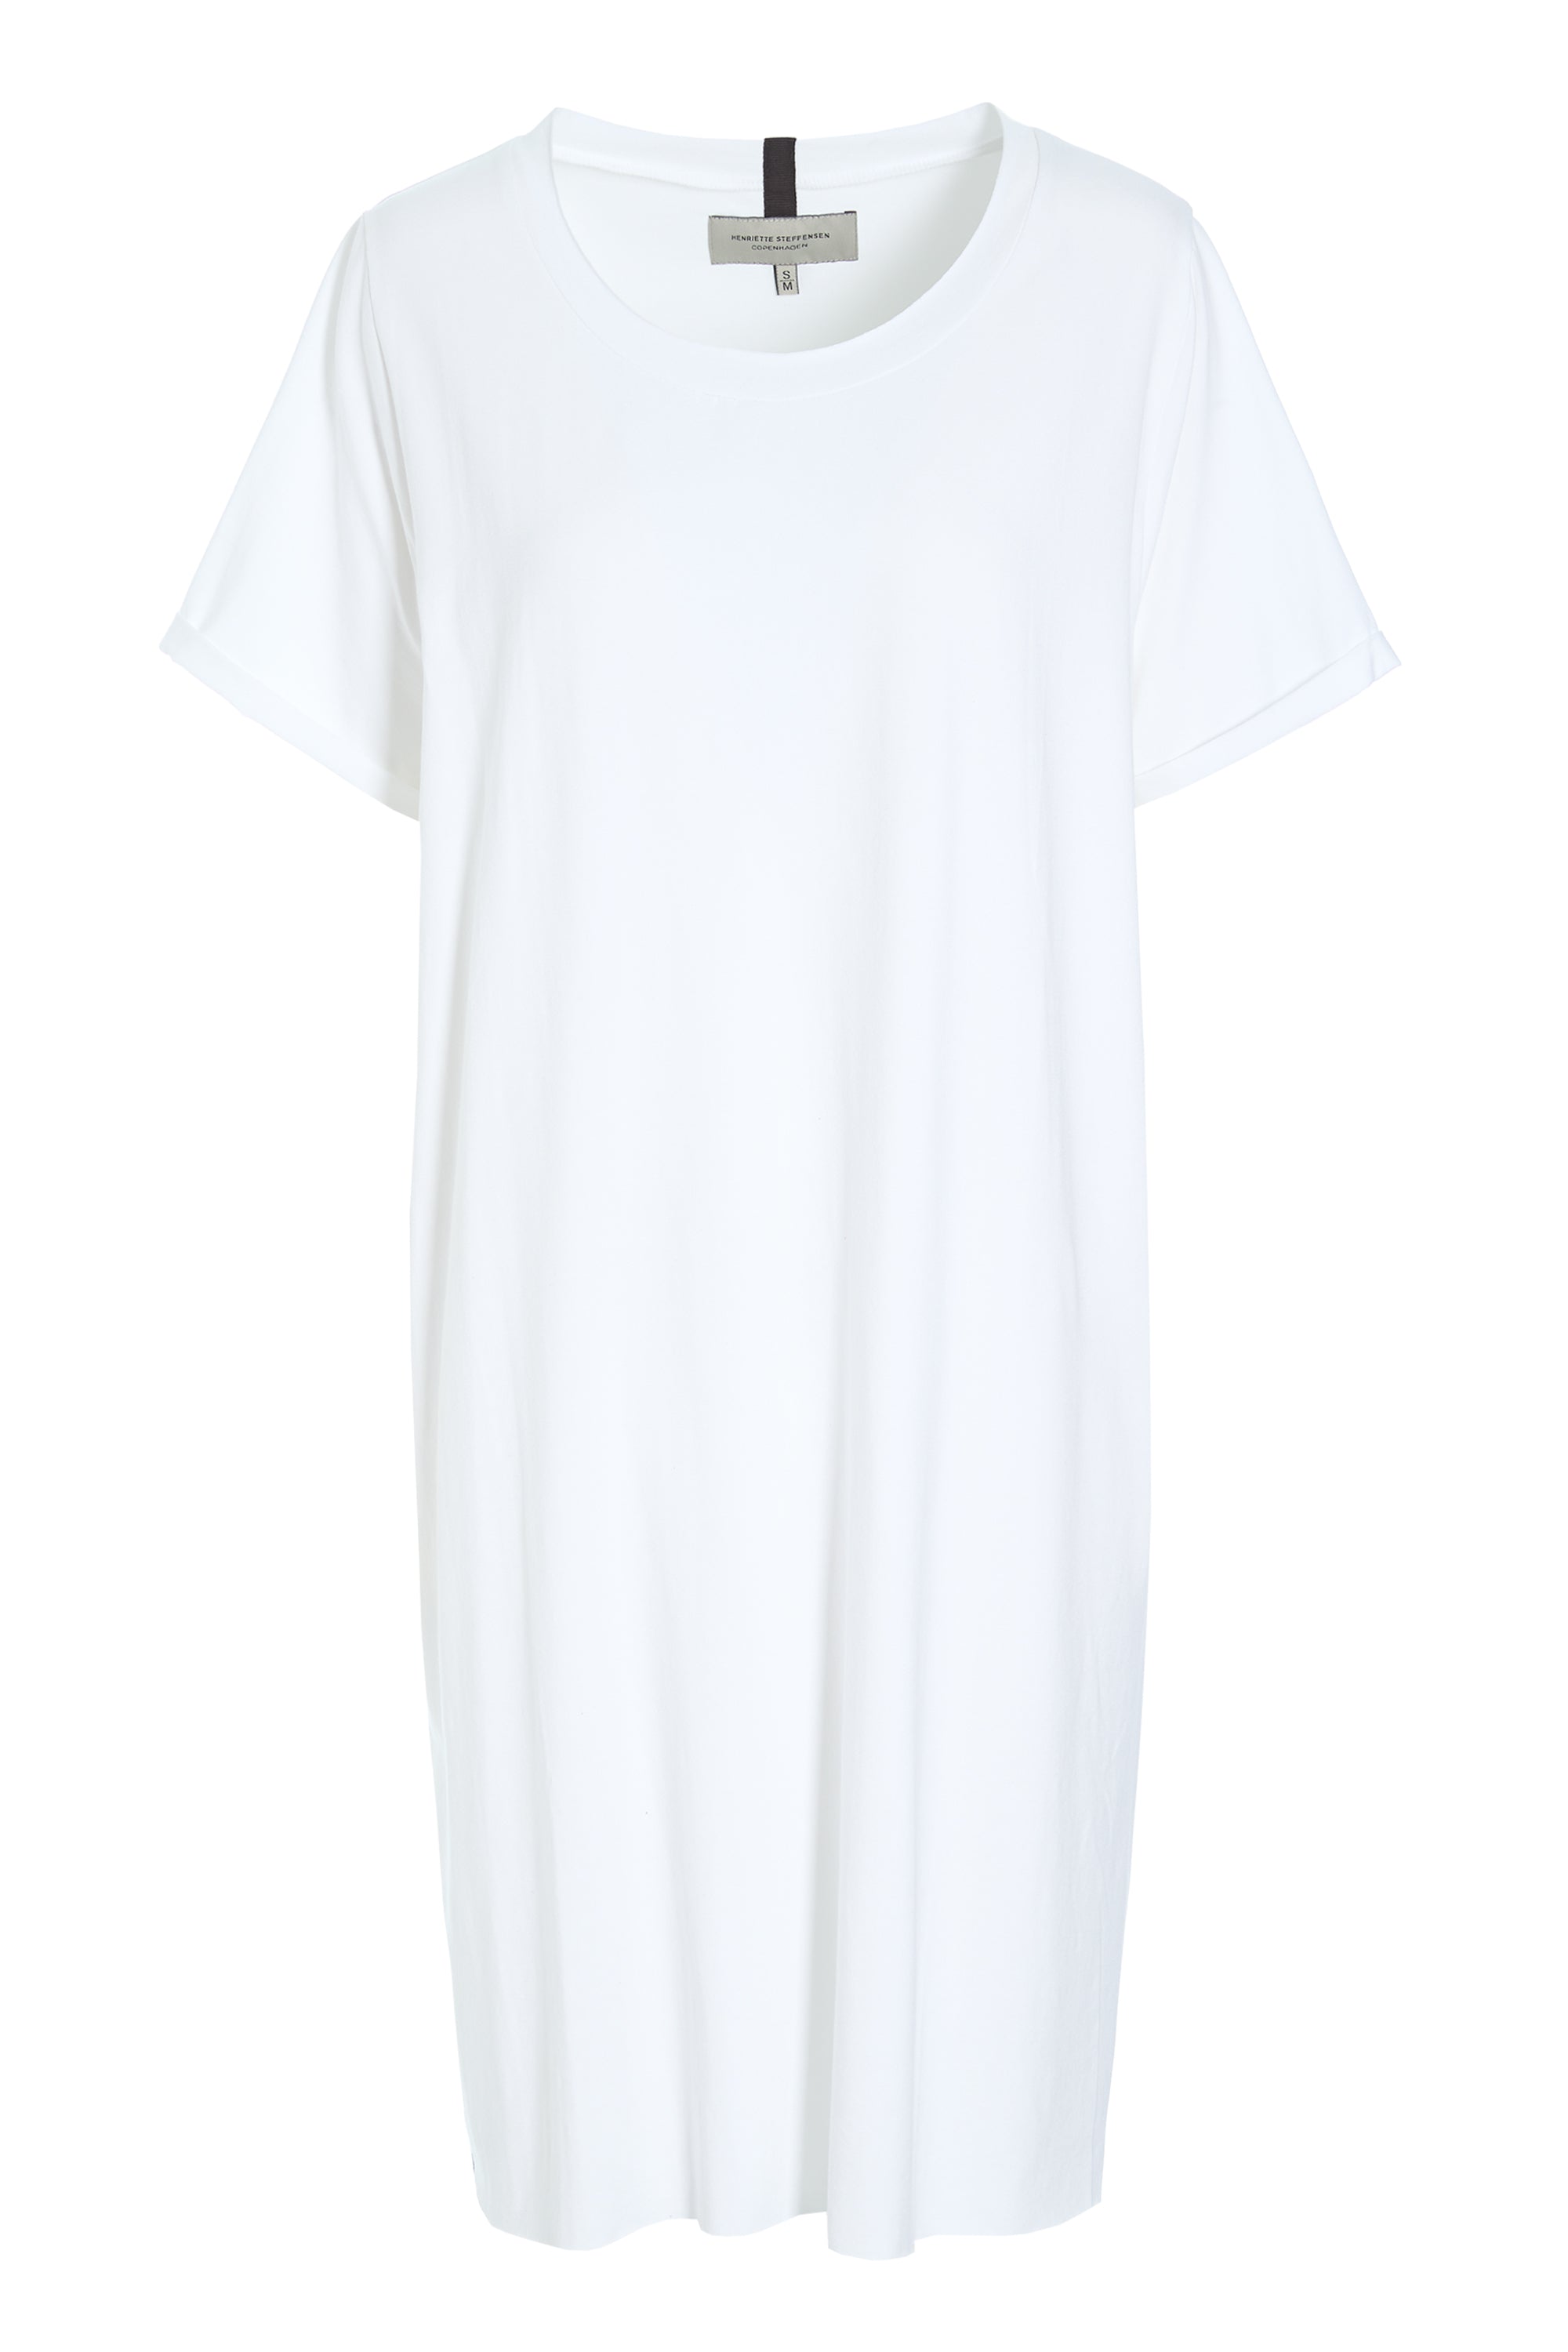 HENRIETTE STEFFENSEN COPENHAGEN KJOLE - 98050 DRESSES jersey WHITE 816